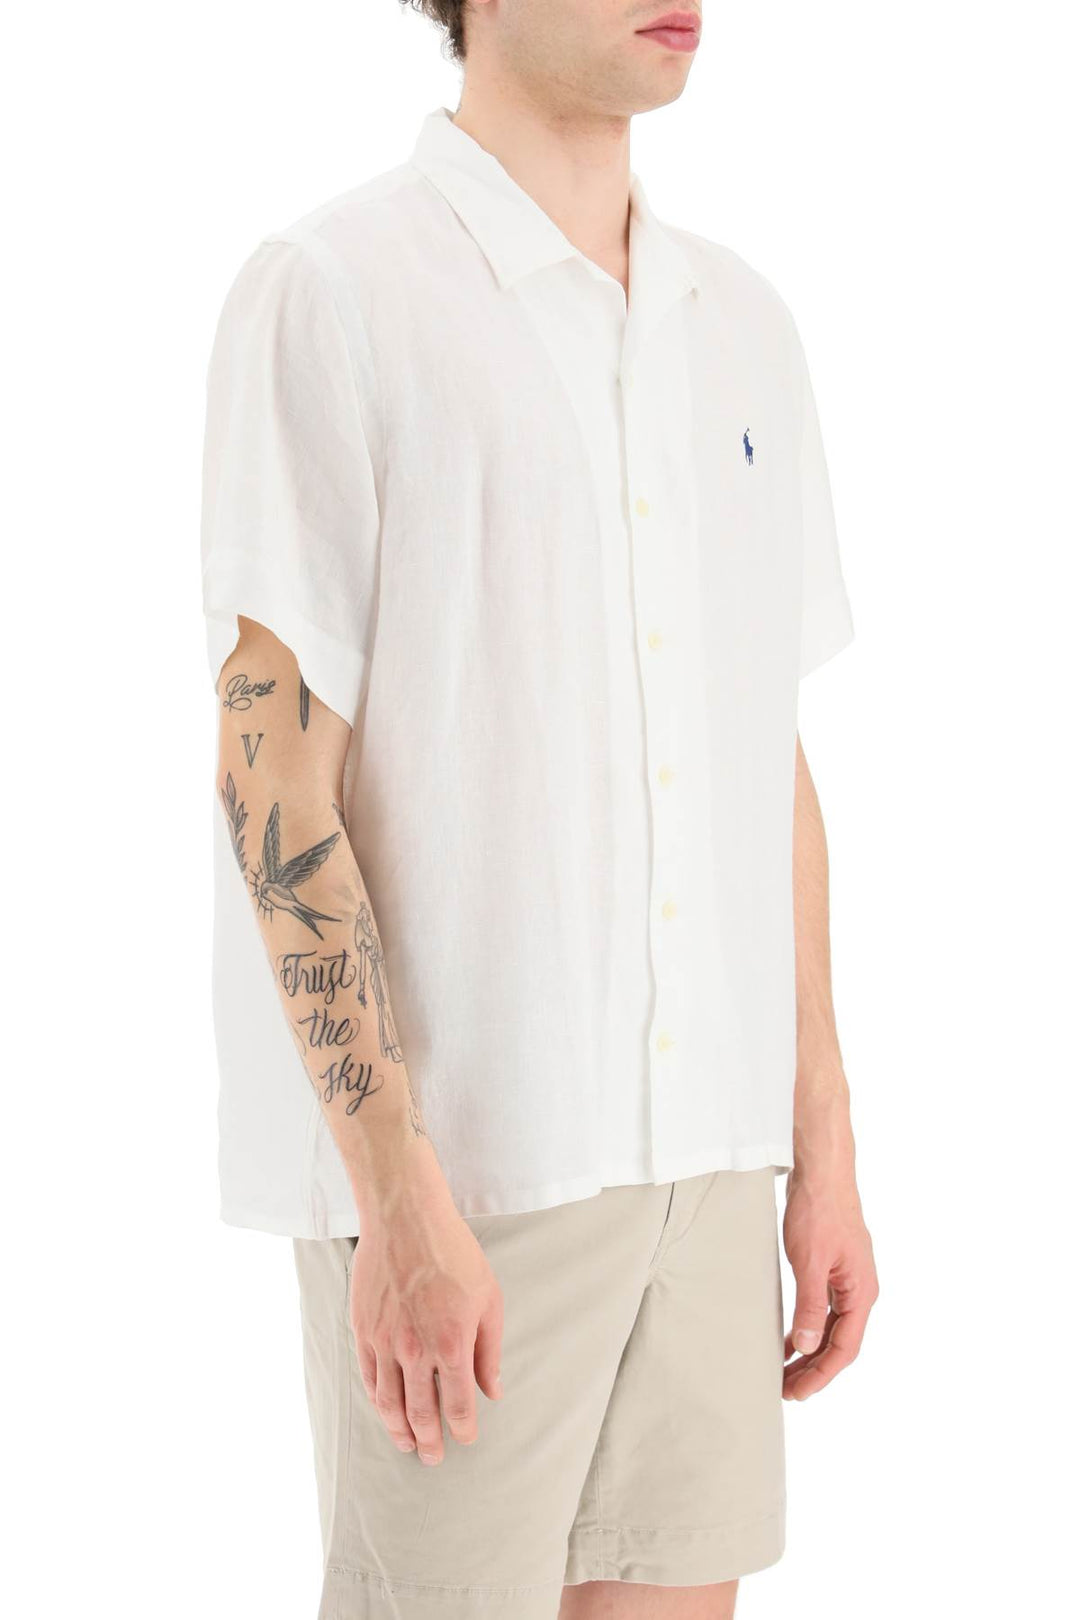 Camicia Maniche Corte In Lino - Polo Ralph Lauren - Uomo